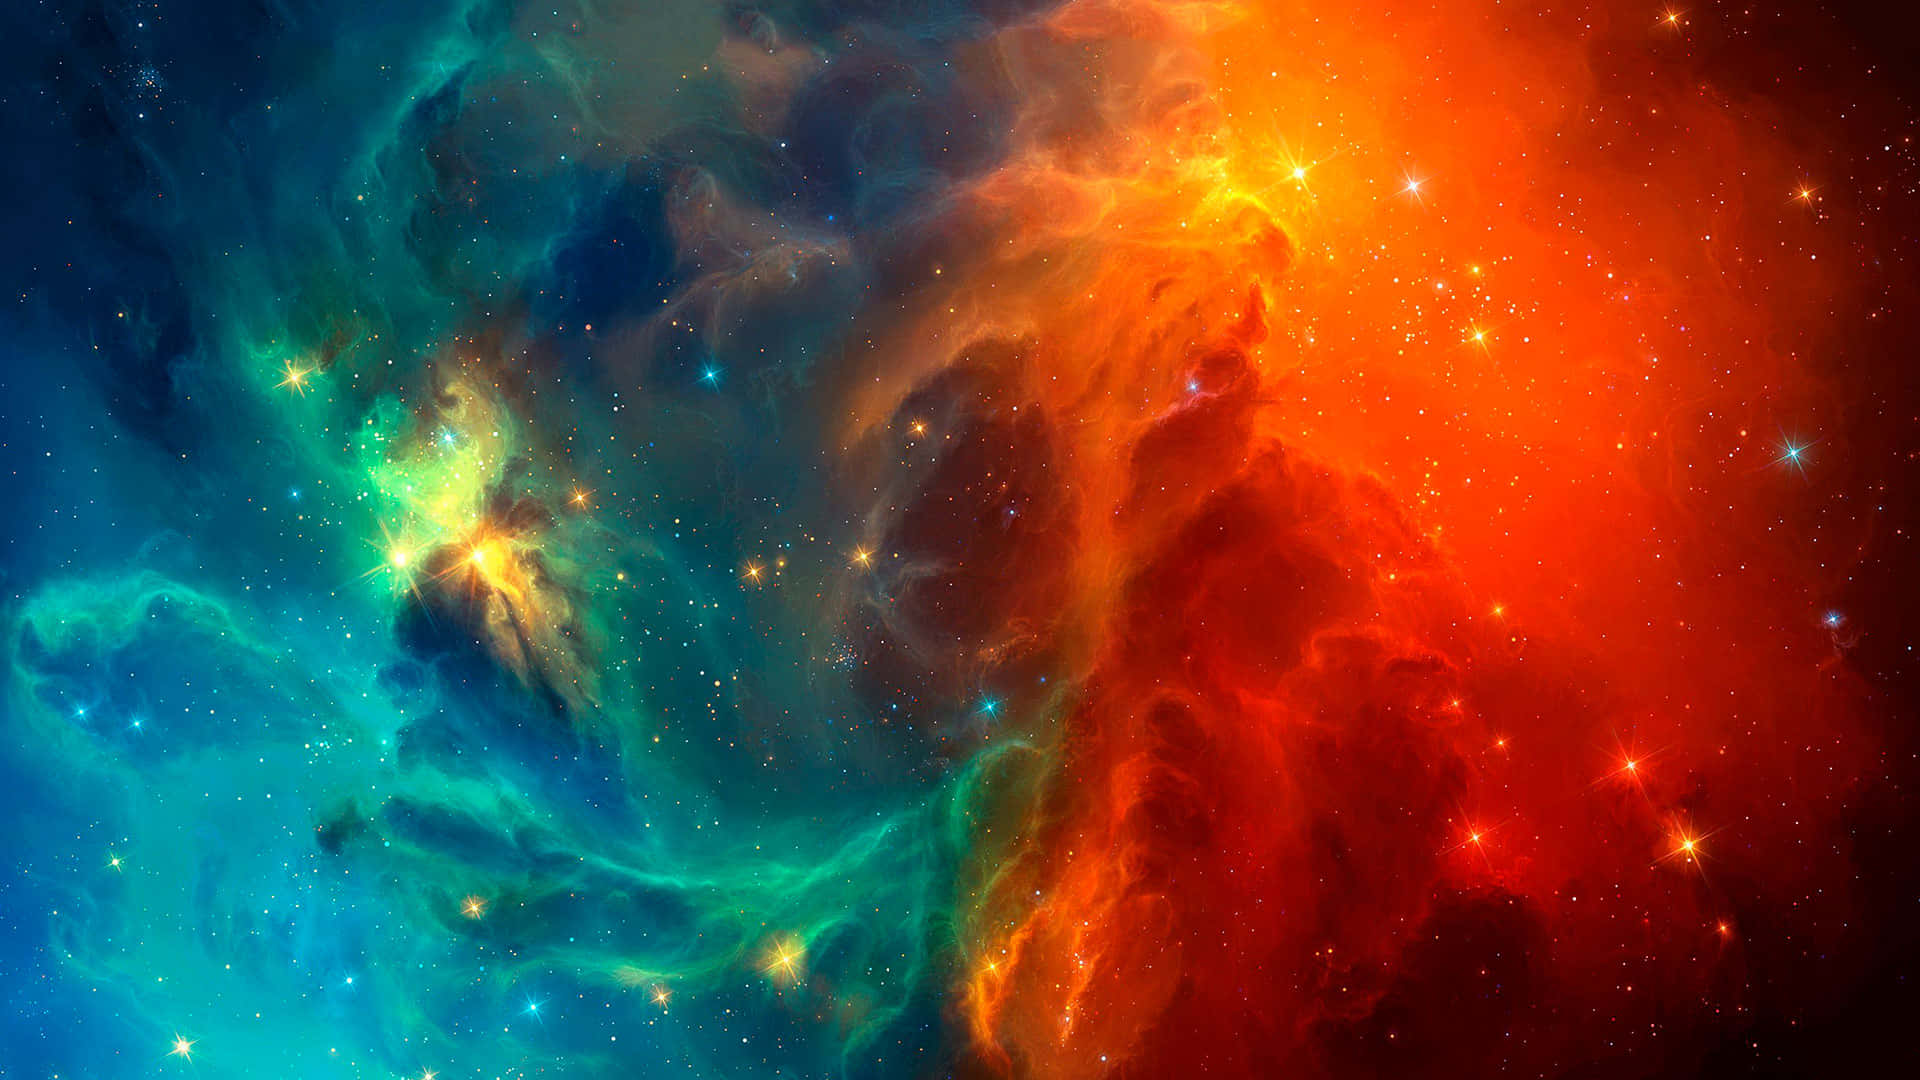 A Colorful Nebula With Stars And Nebulas